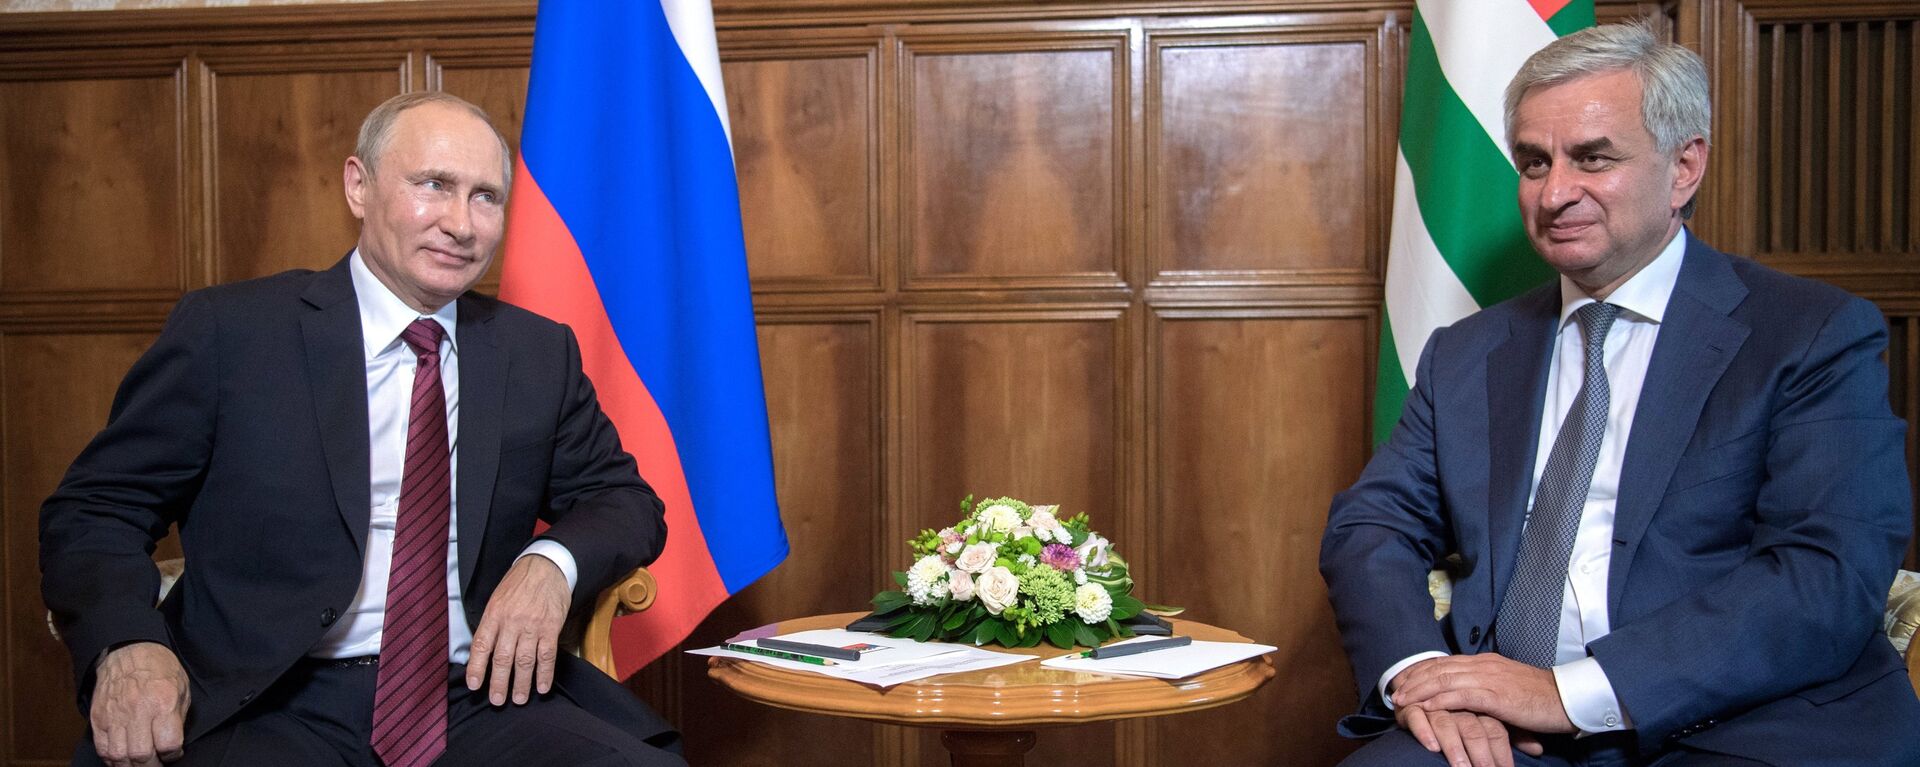 Krievijas prezidents Vladimirs Putins un Abhāzijas Republikas prezidents Rauls Hadžimba - Sputnik Latvija, 1920, 09.08.2017